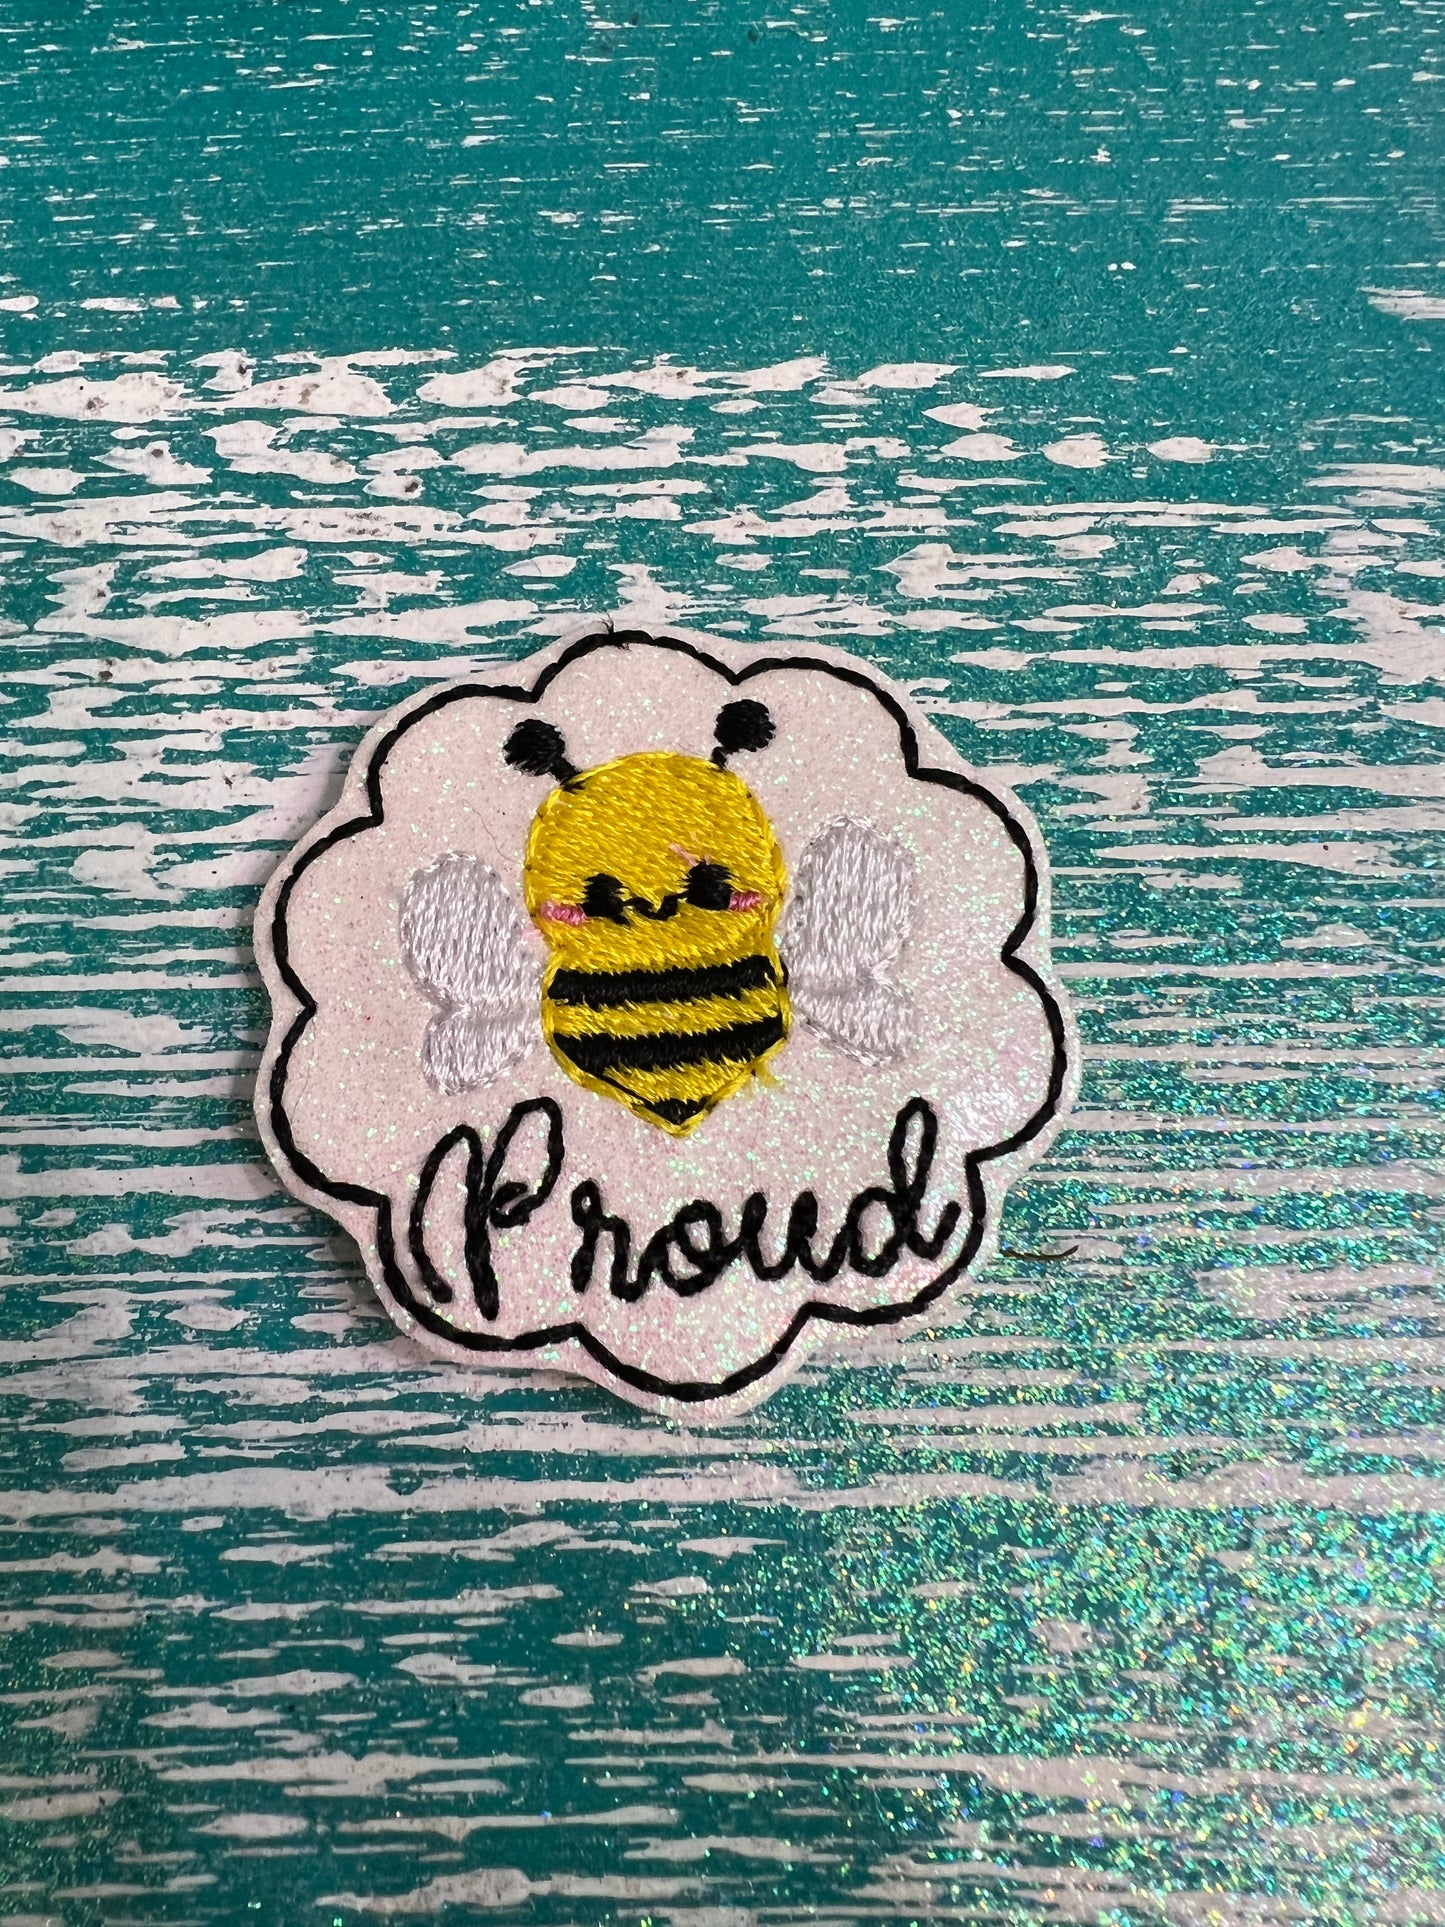 Bee proud